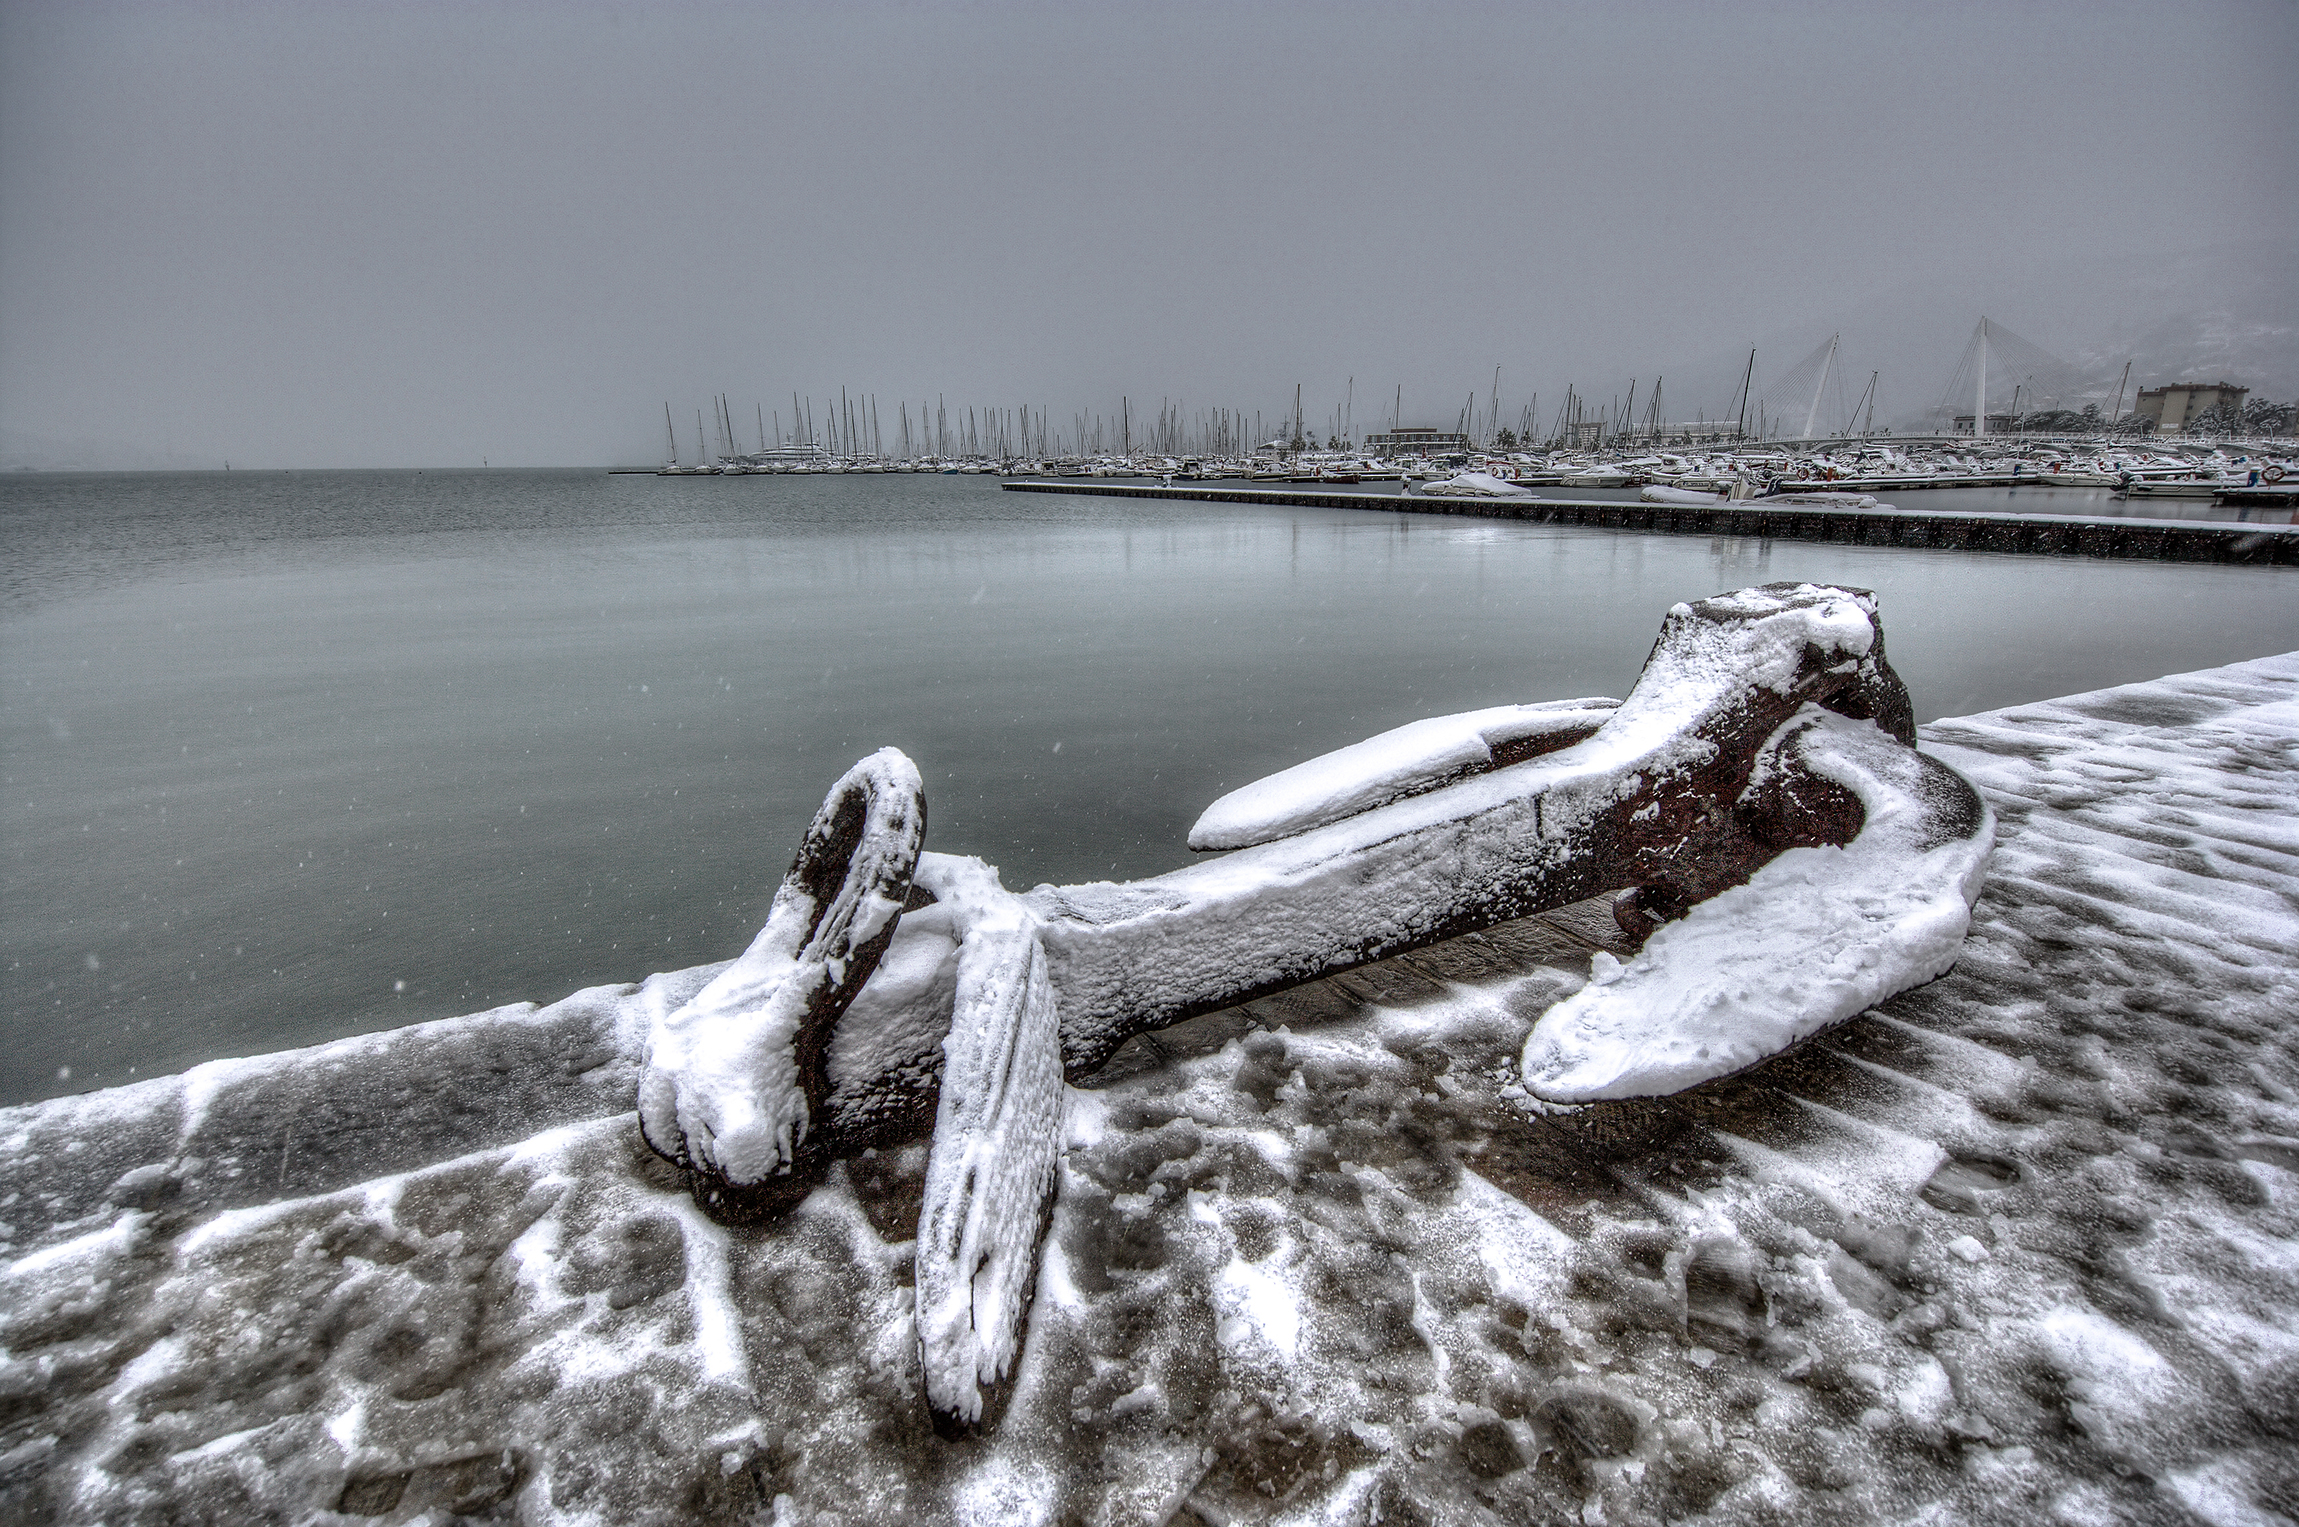 snowfall at the pier Italy...